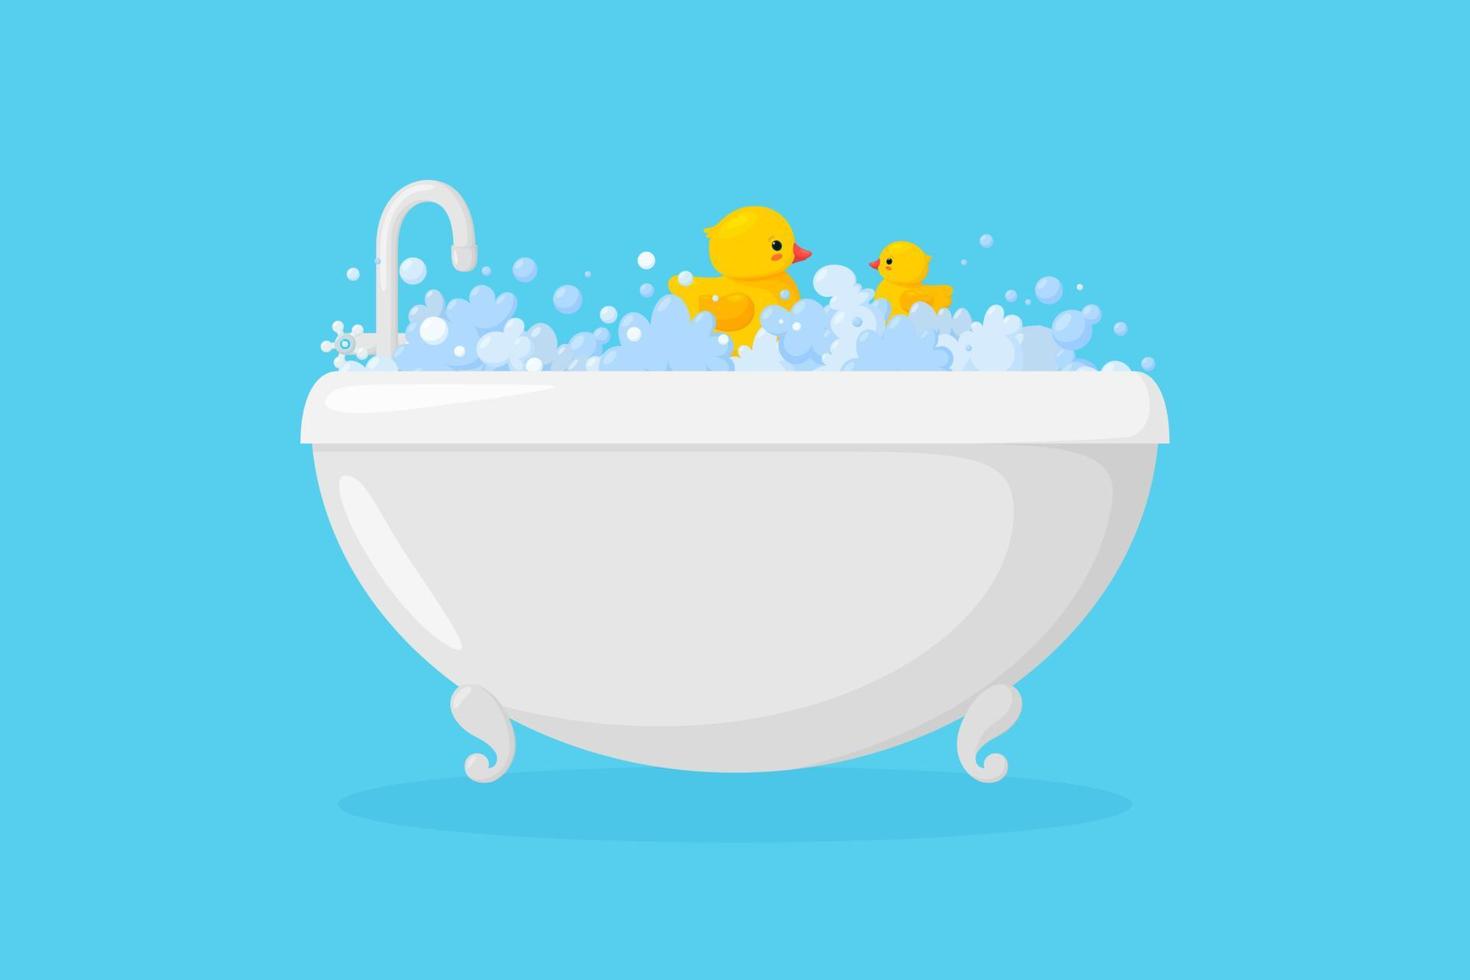 baignoire avec canards en plastique dans la mousse. canards jaunes dans des bulles et de la mousse isolées sur fond bleu. illustration vectorielle vecteur